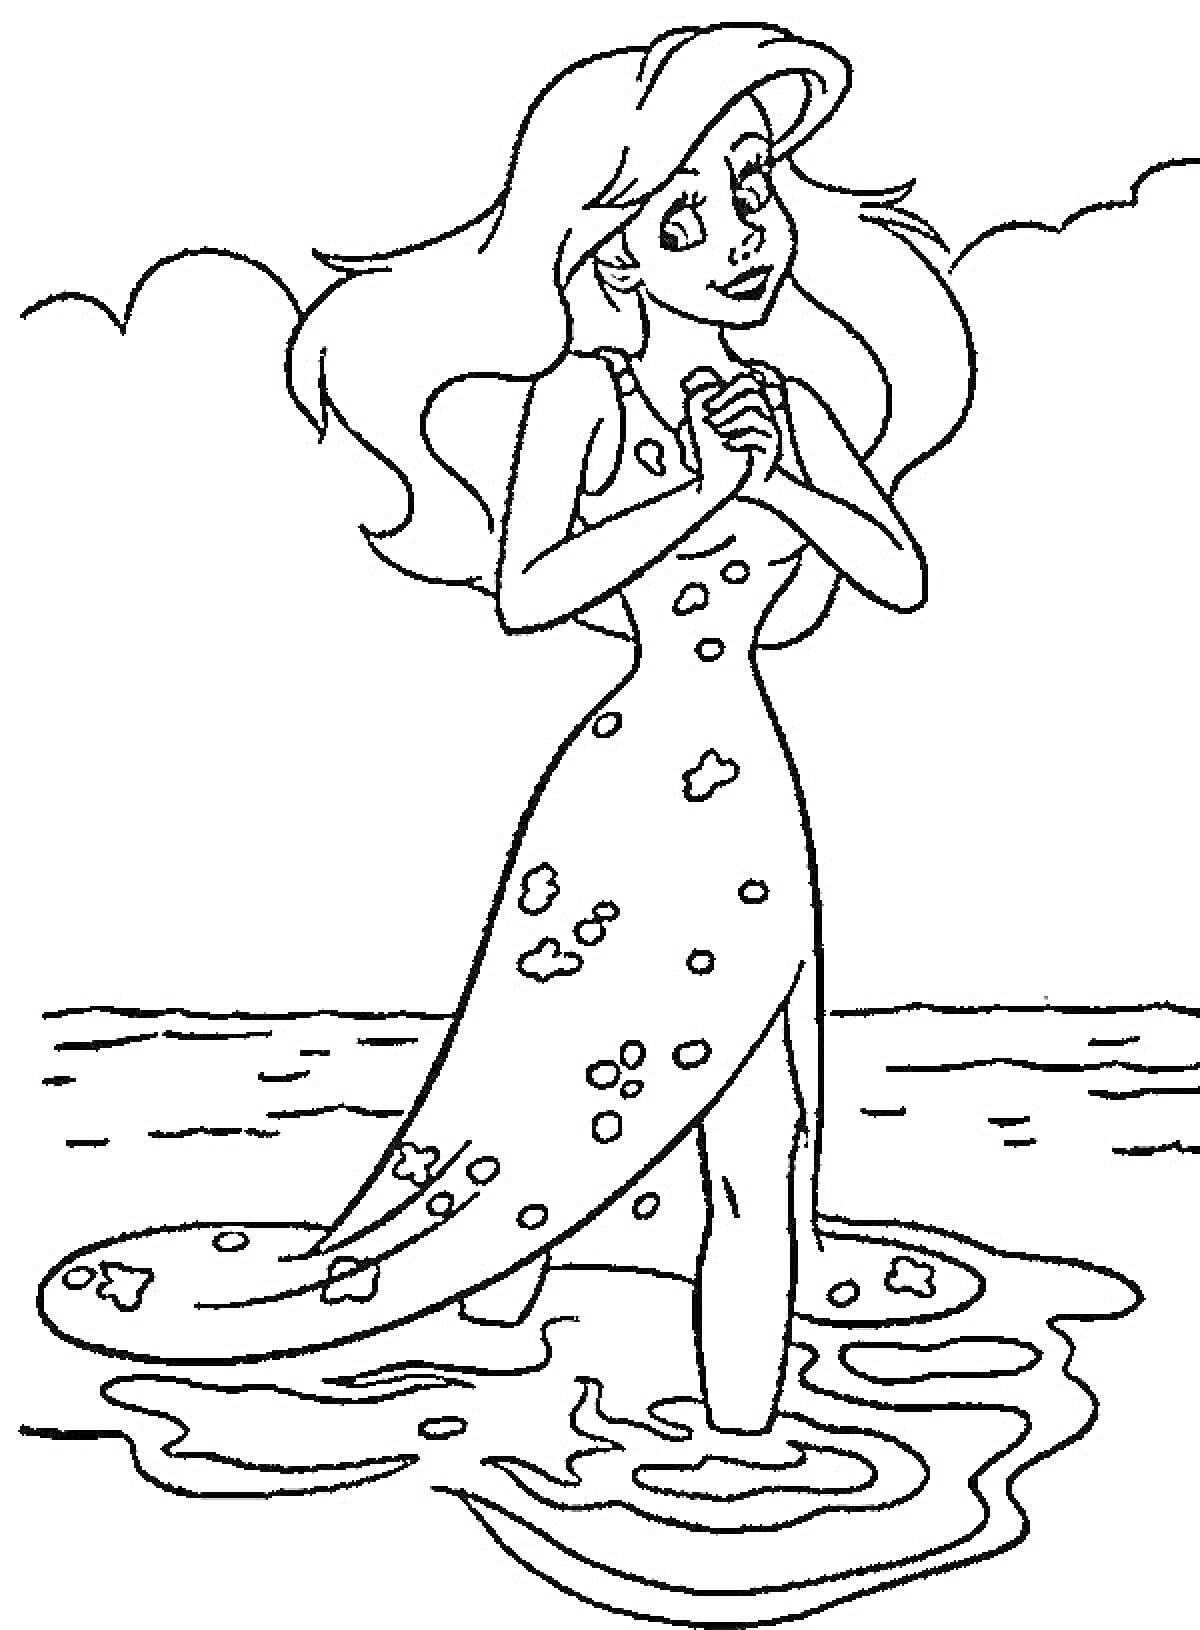 Раскраска Подводная принцесса с длинными волосами в воде на фоне моря и облаков